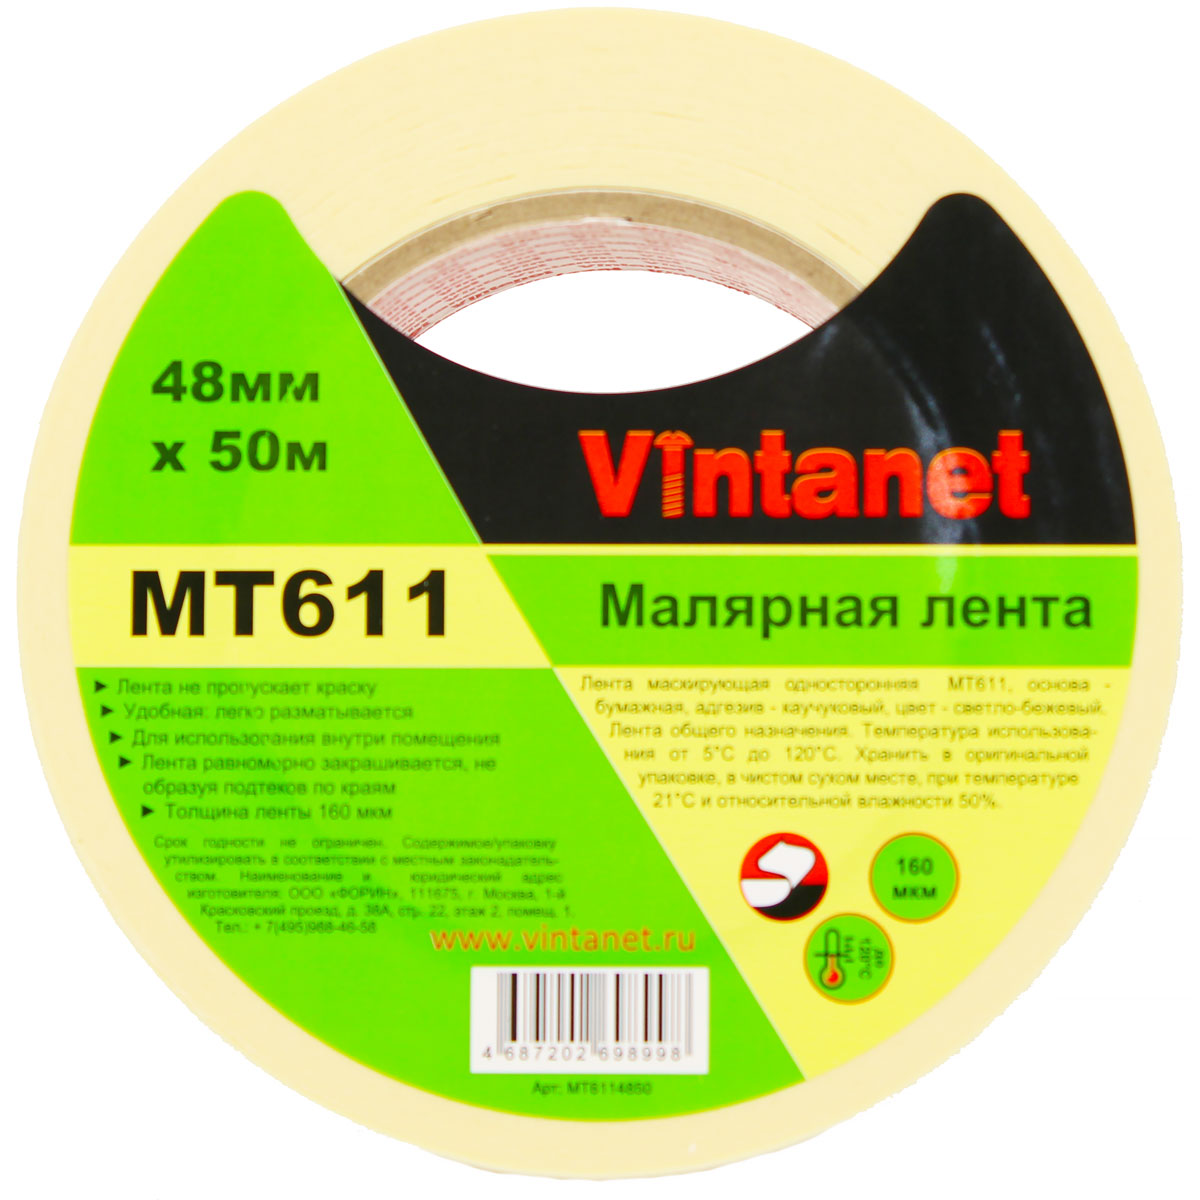 Лента малярная высокотемпературная Vintanet MT611, 120 С, 160 мкм, 48мм х 50м, MT6114850 универсальная экстра тонкая малярная лента color expert